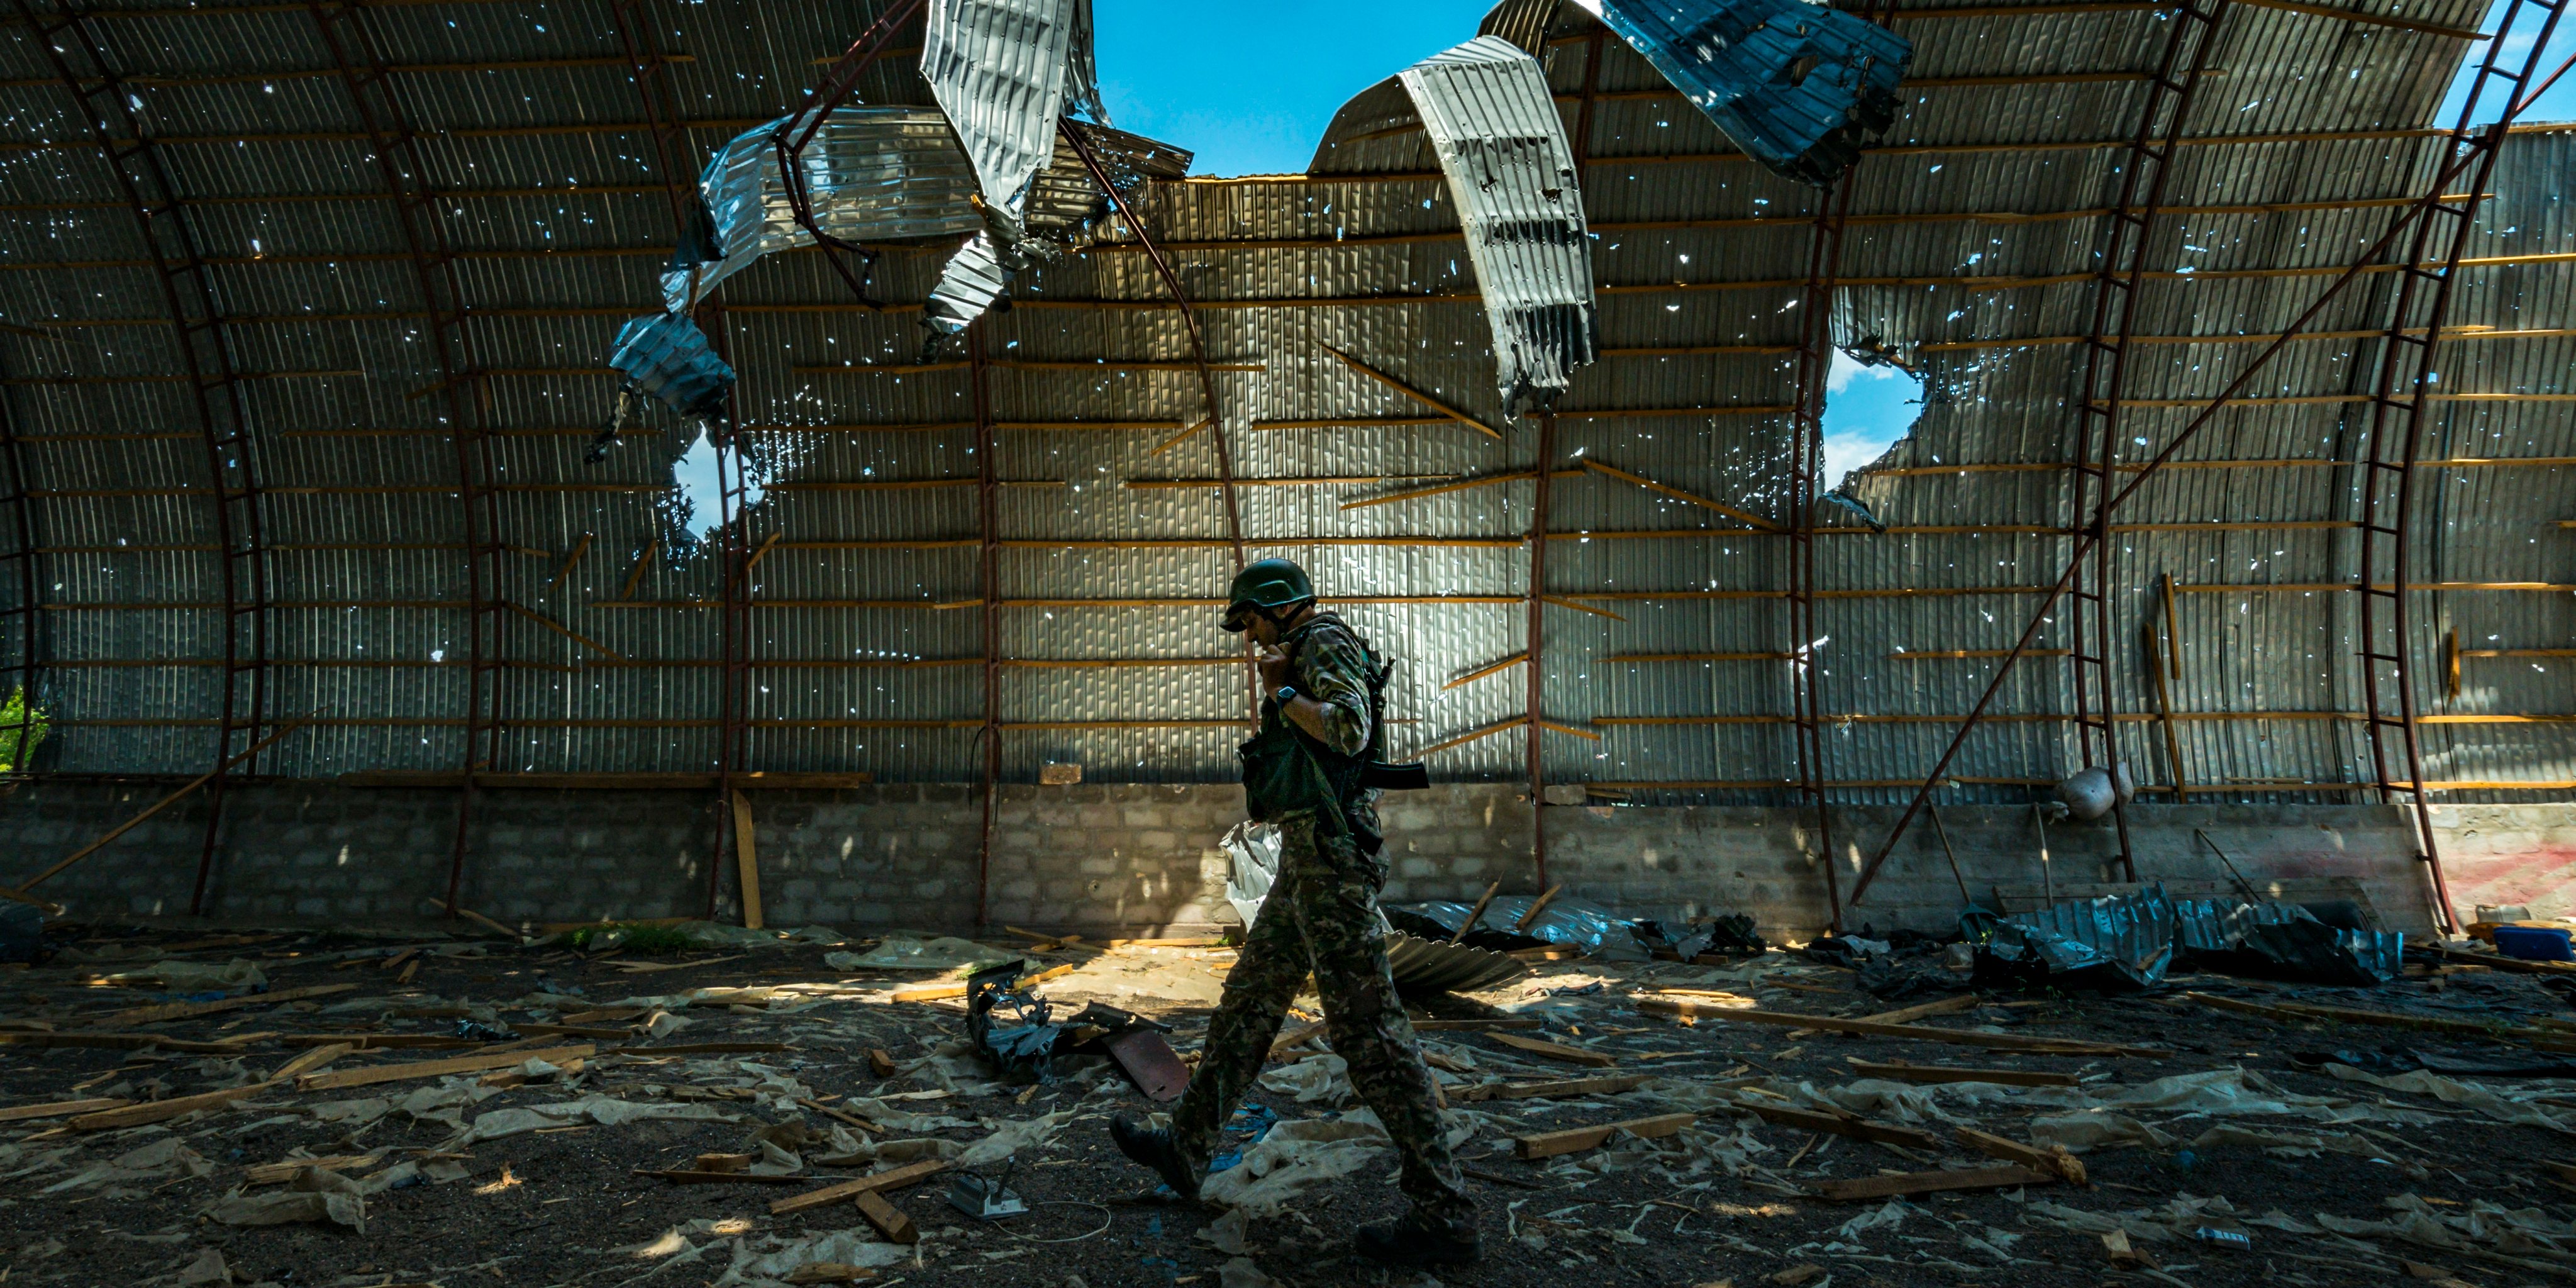 Situation In The Frontlines Of Zaporizhzhia area, Ukraine.